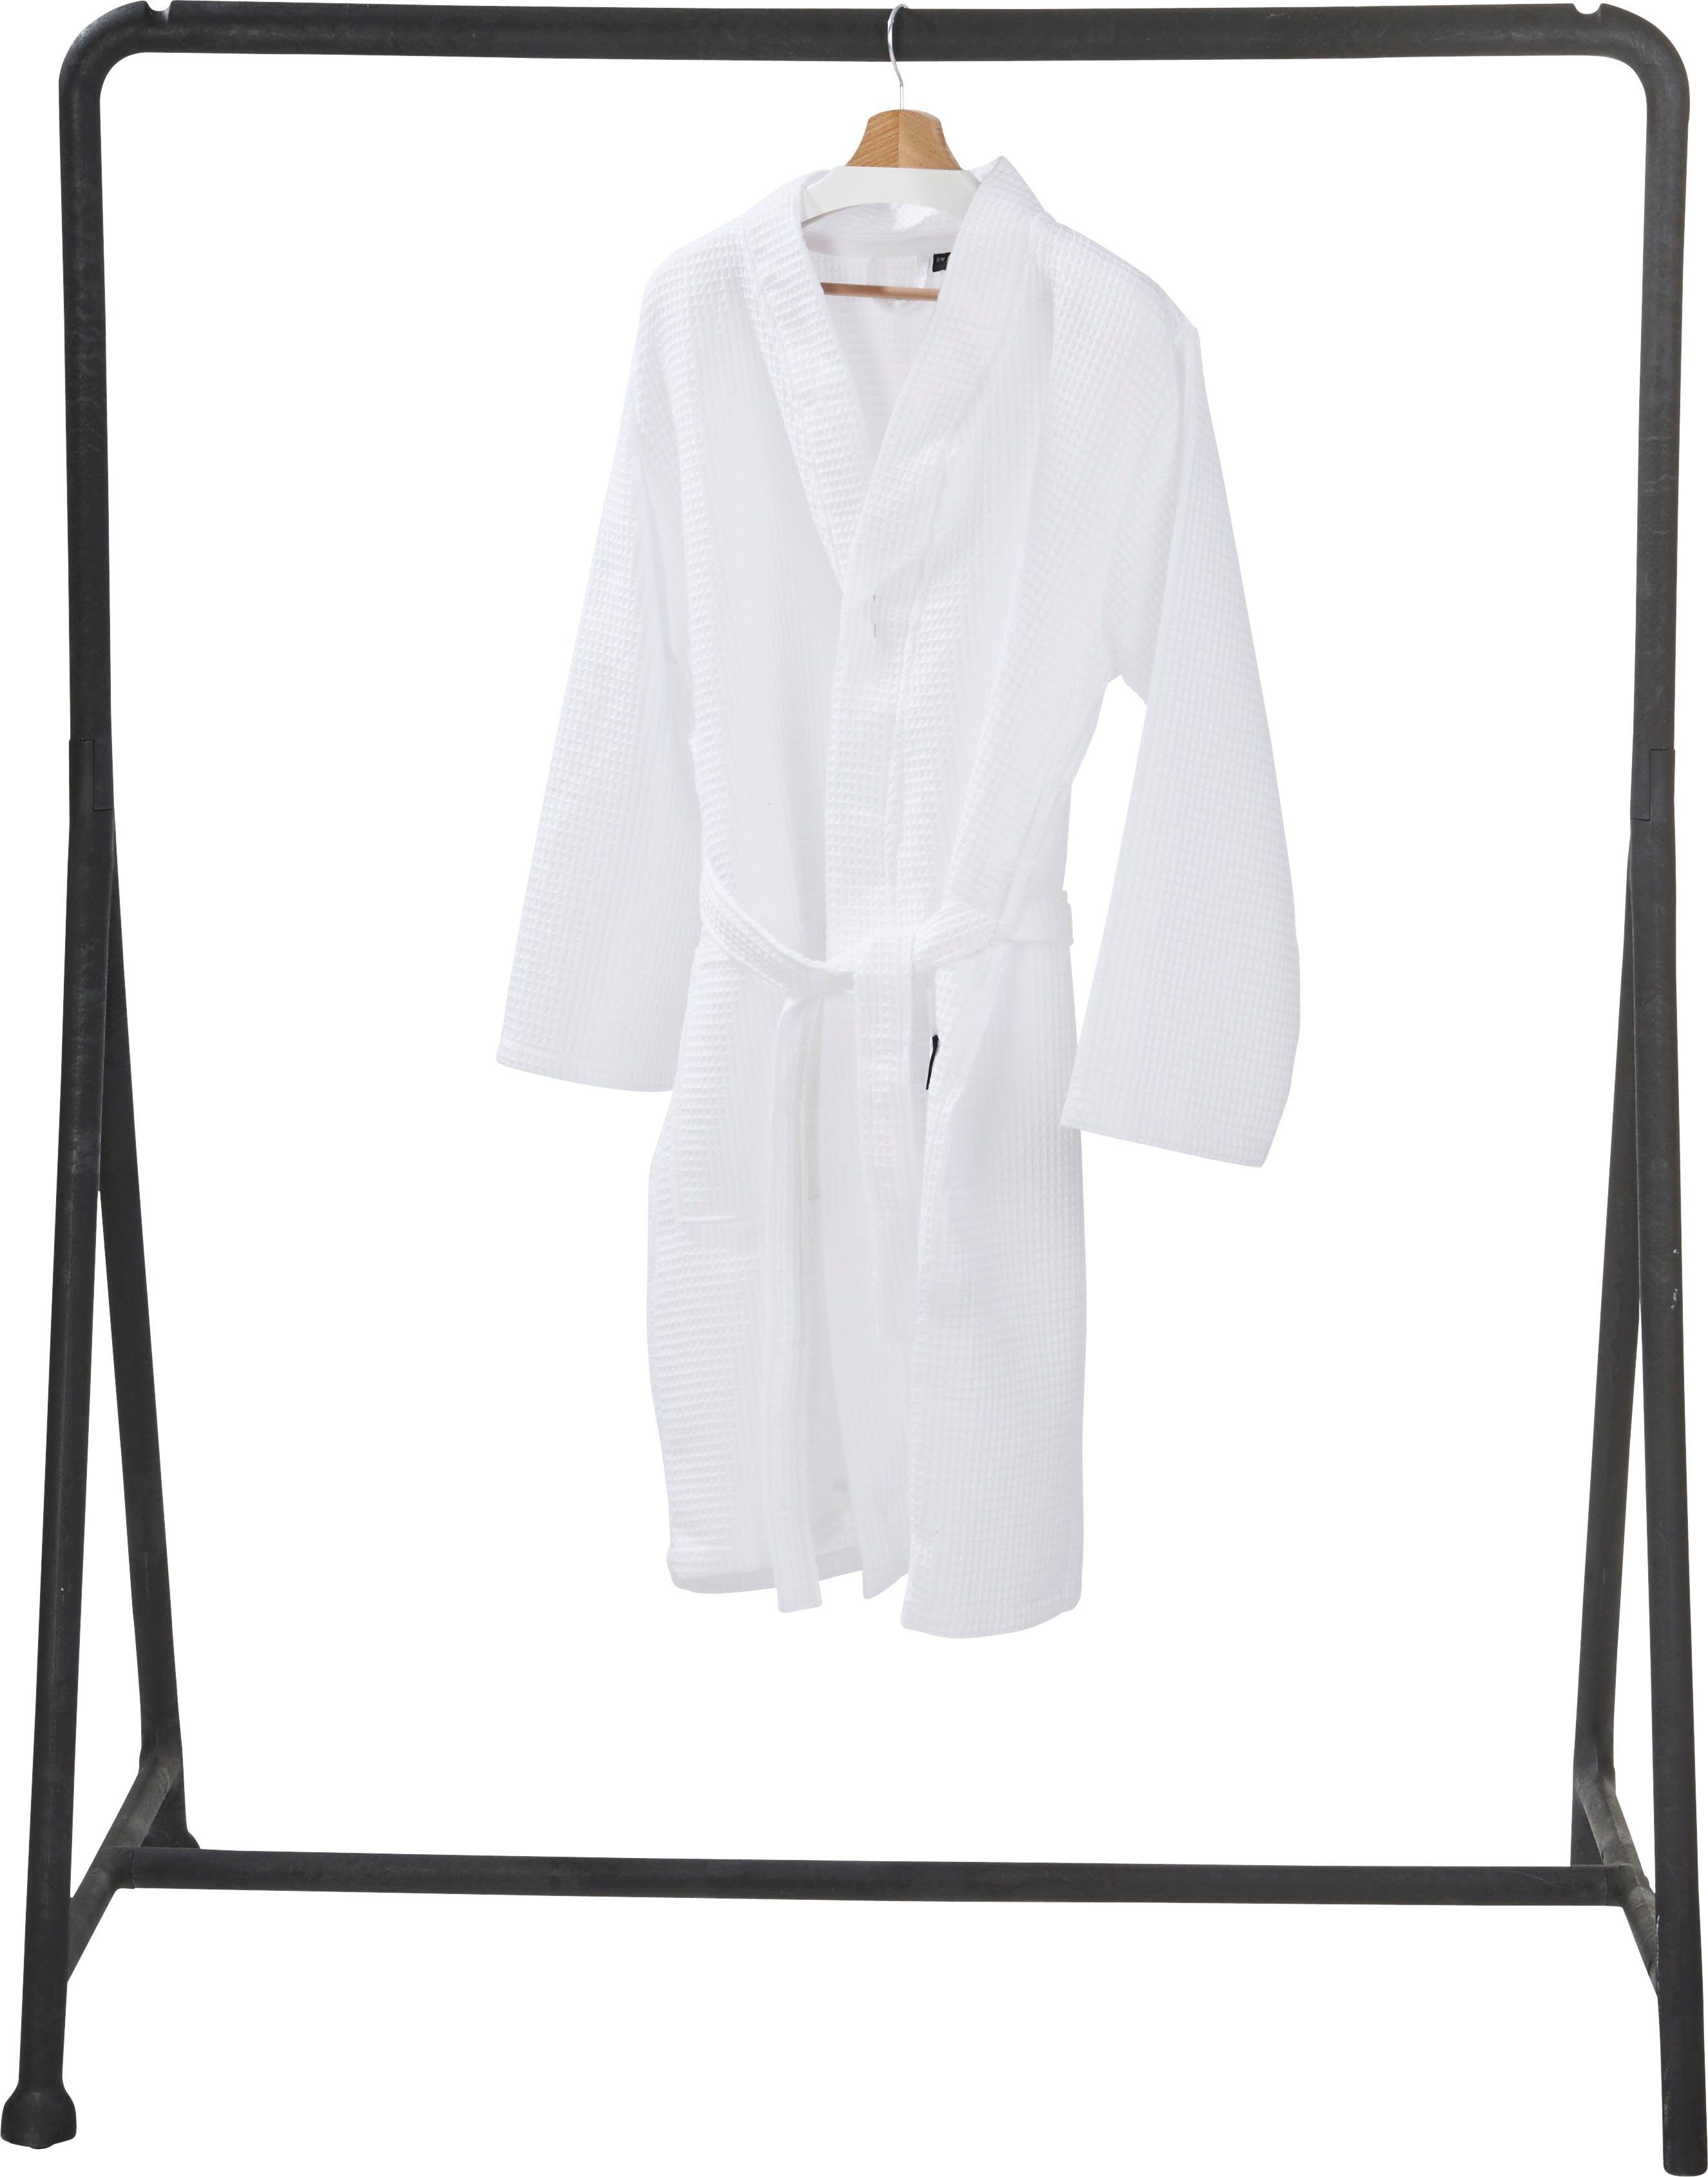 Taschen aufgesetzten mit Kurzform, MySense, Waffelpiqué-Struktur, Piqué, done.® weiß und Damenbademantel Schalkragen